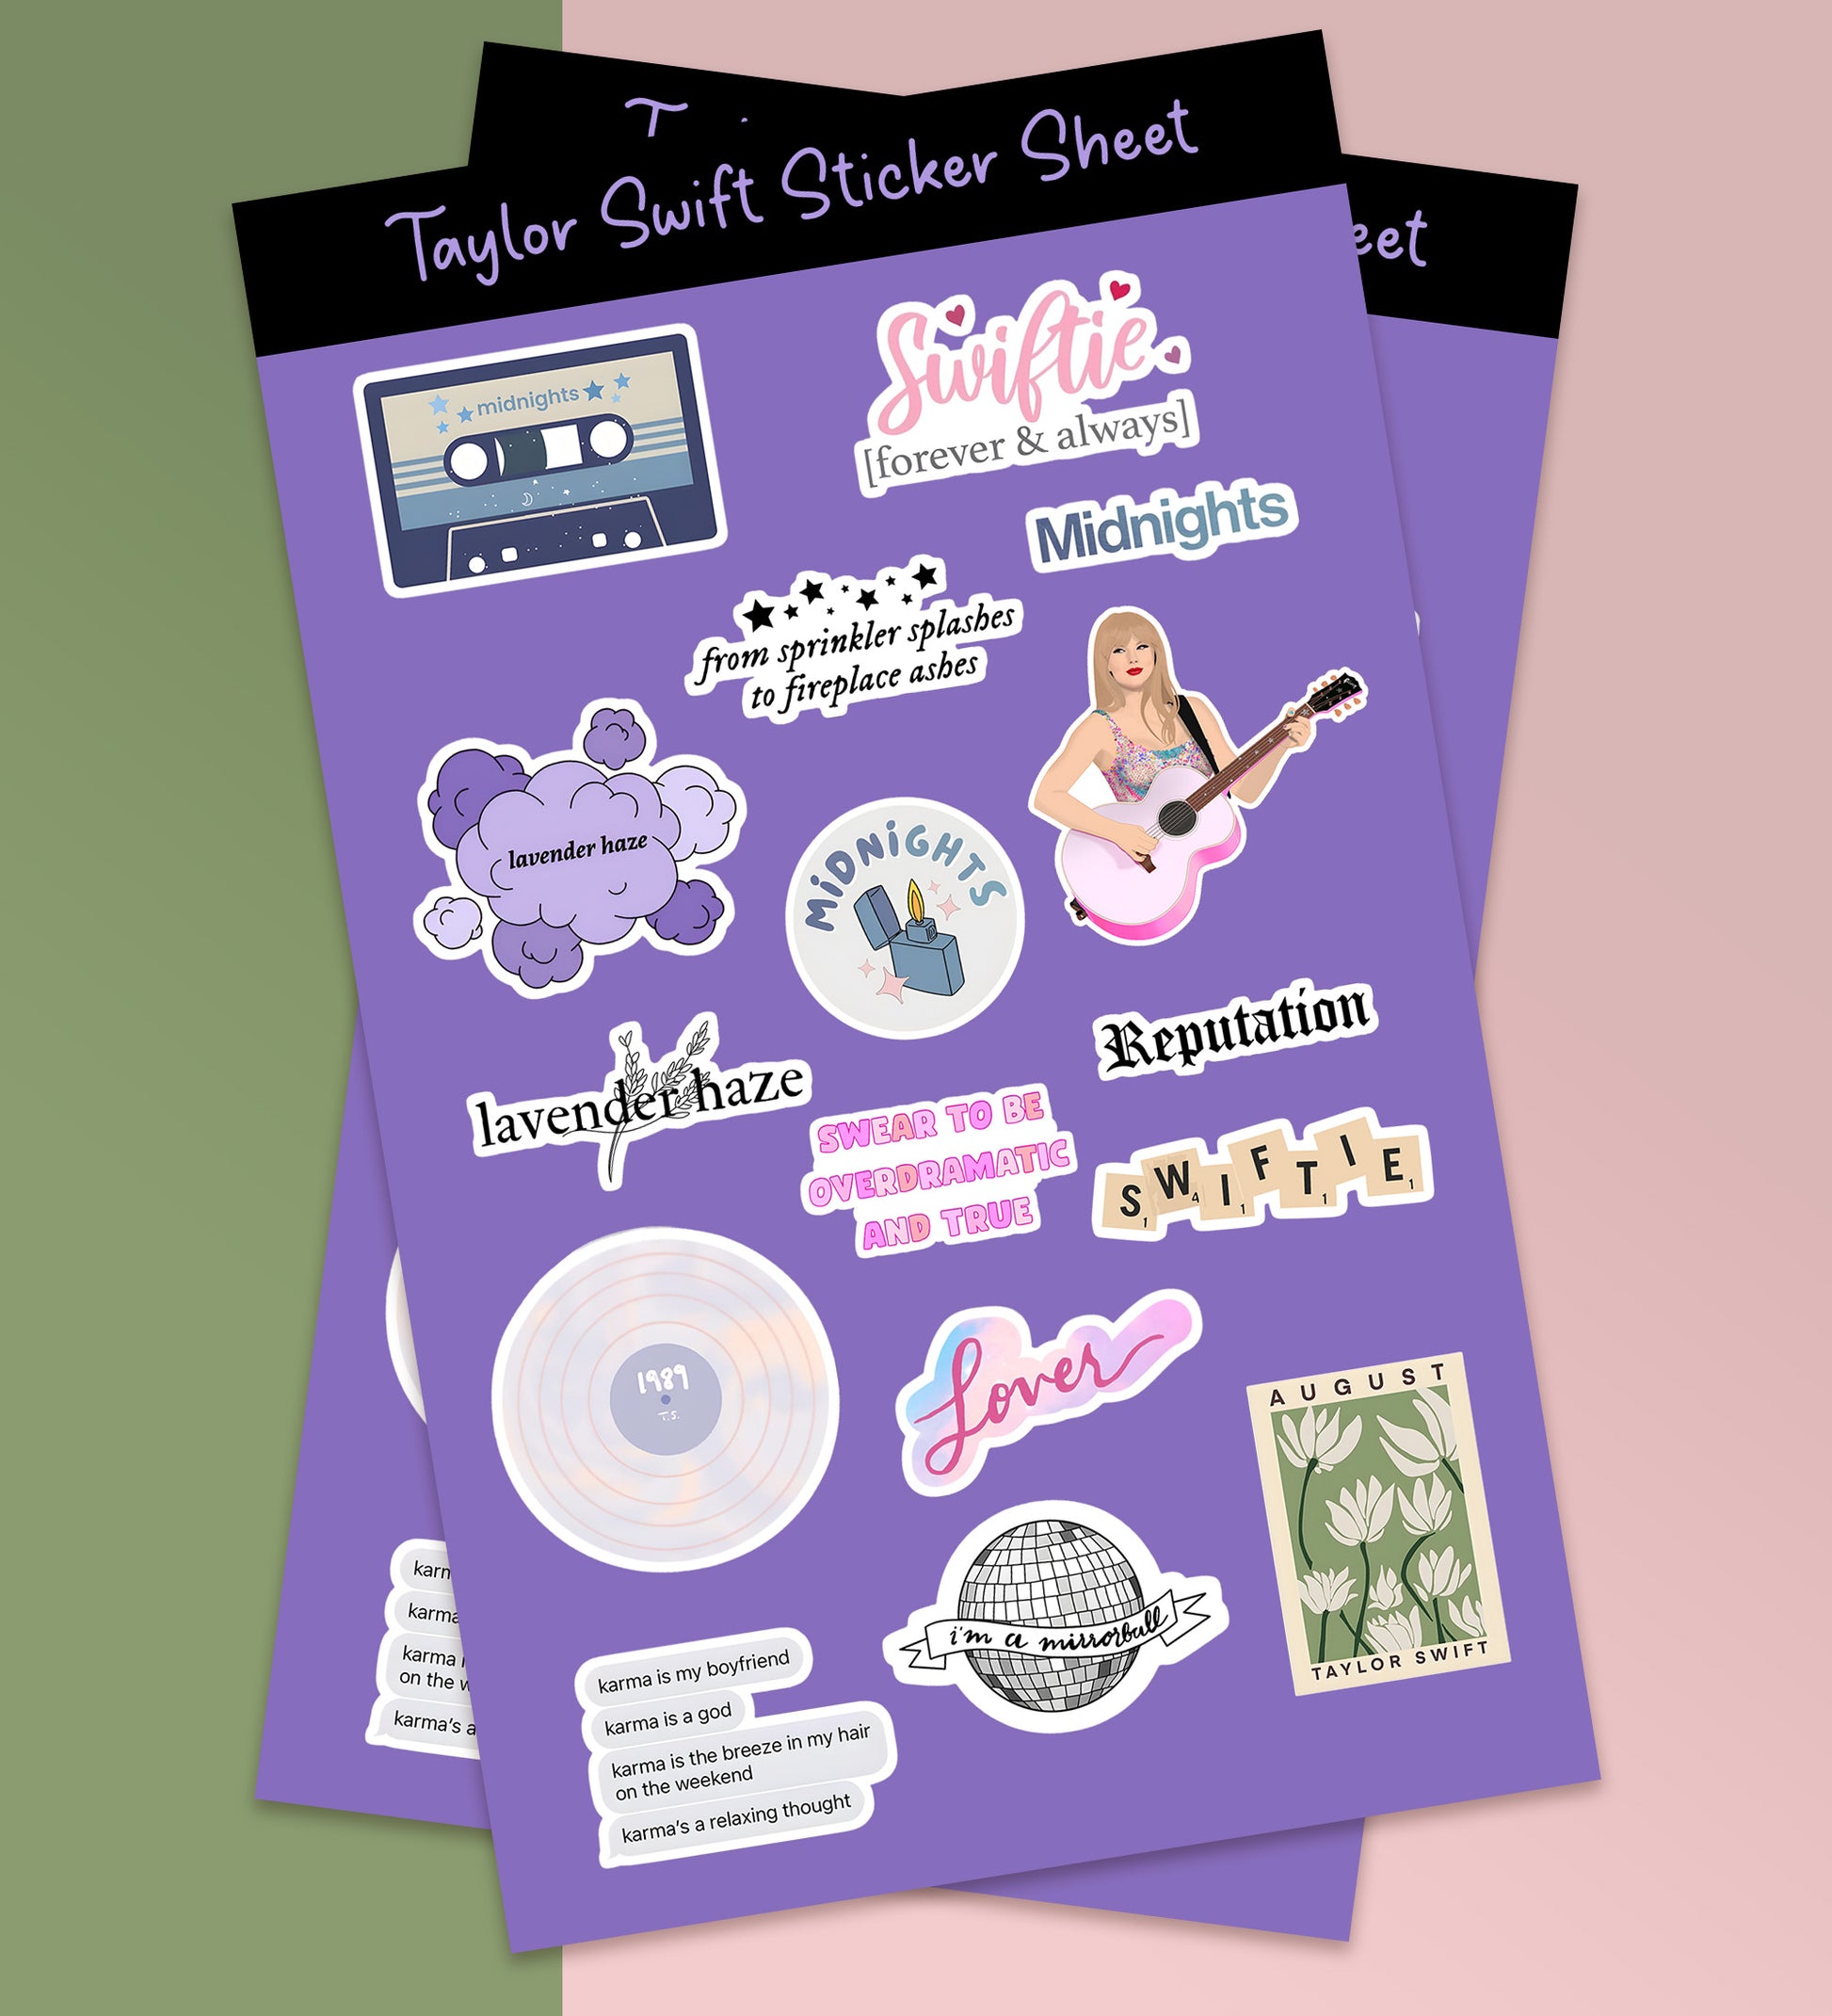 Taylor Swift Sticker Sheet – Peeekaboo